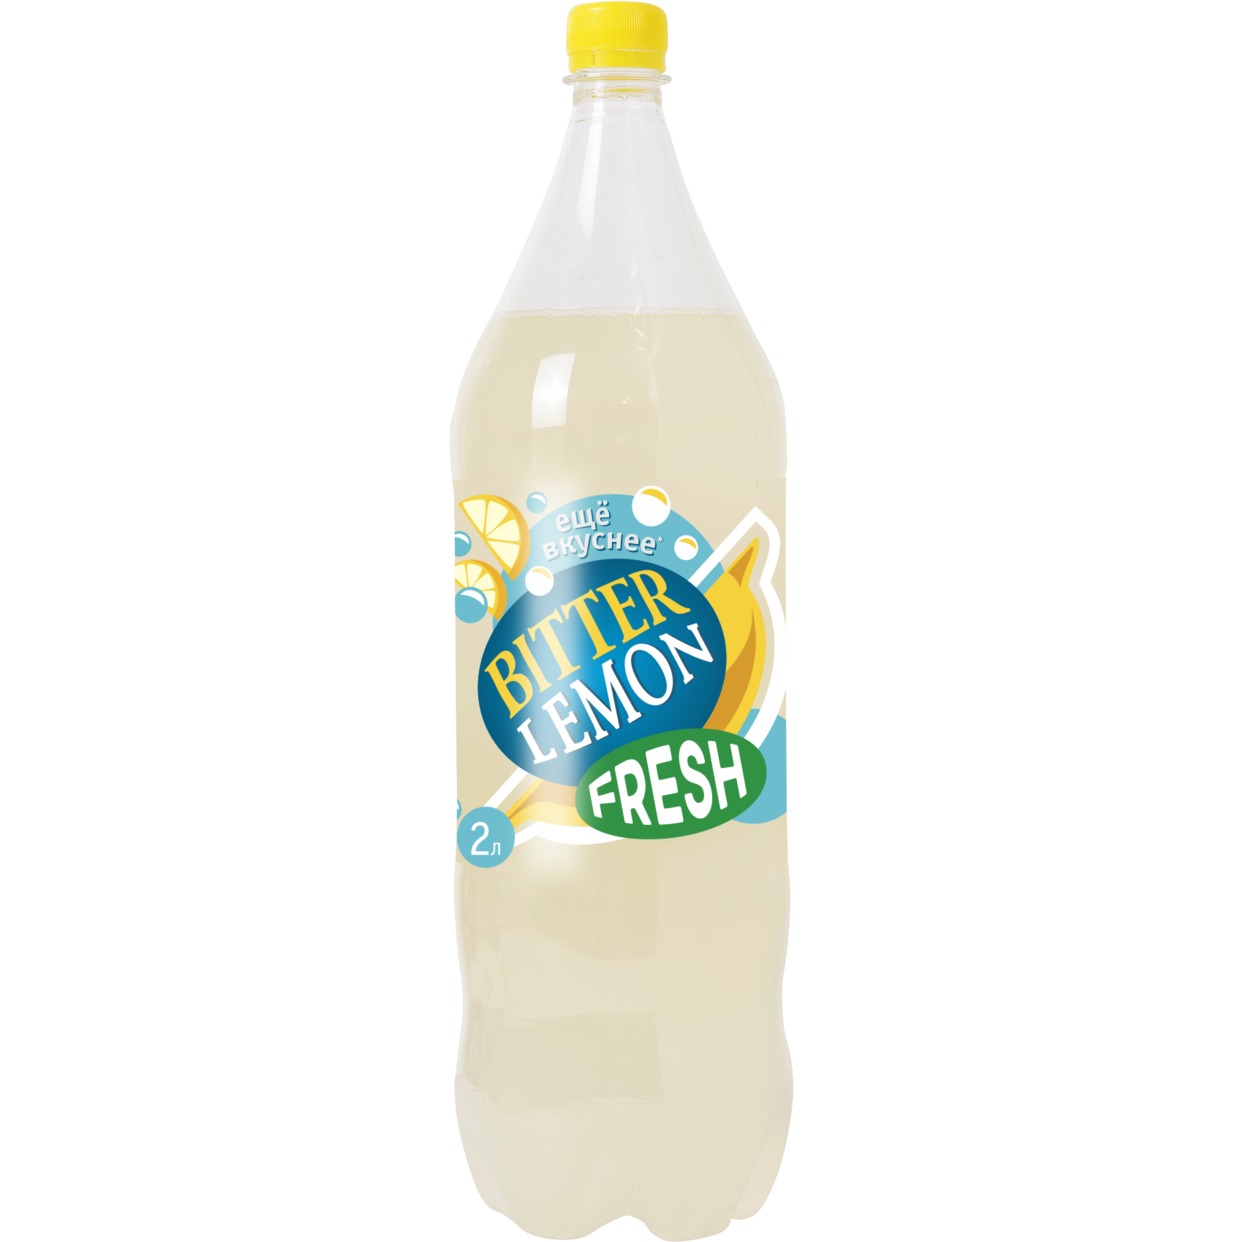 Напиток Fresh Bitter Lemon, сильногазированный, 2 л